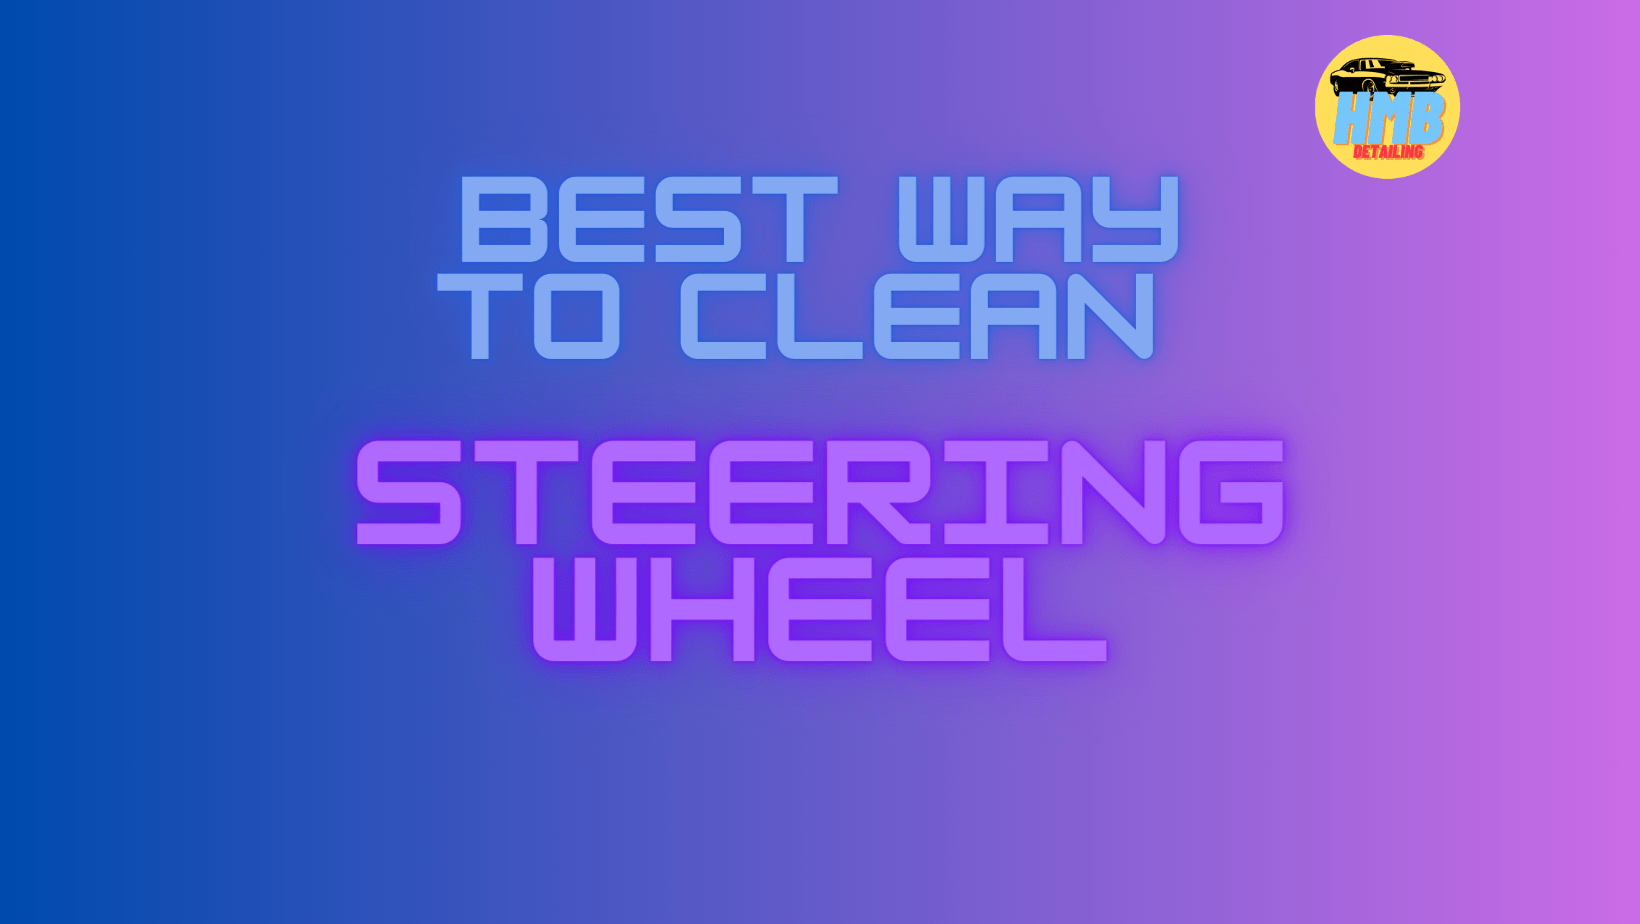 Best Way to Clean Steering Wheel